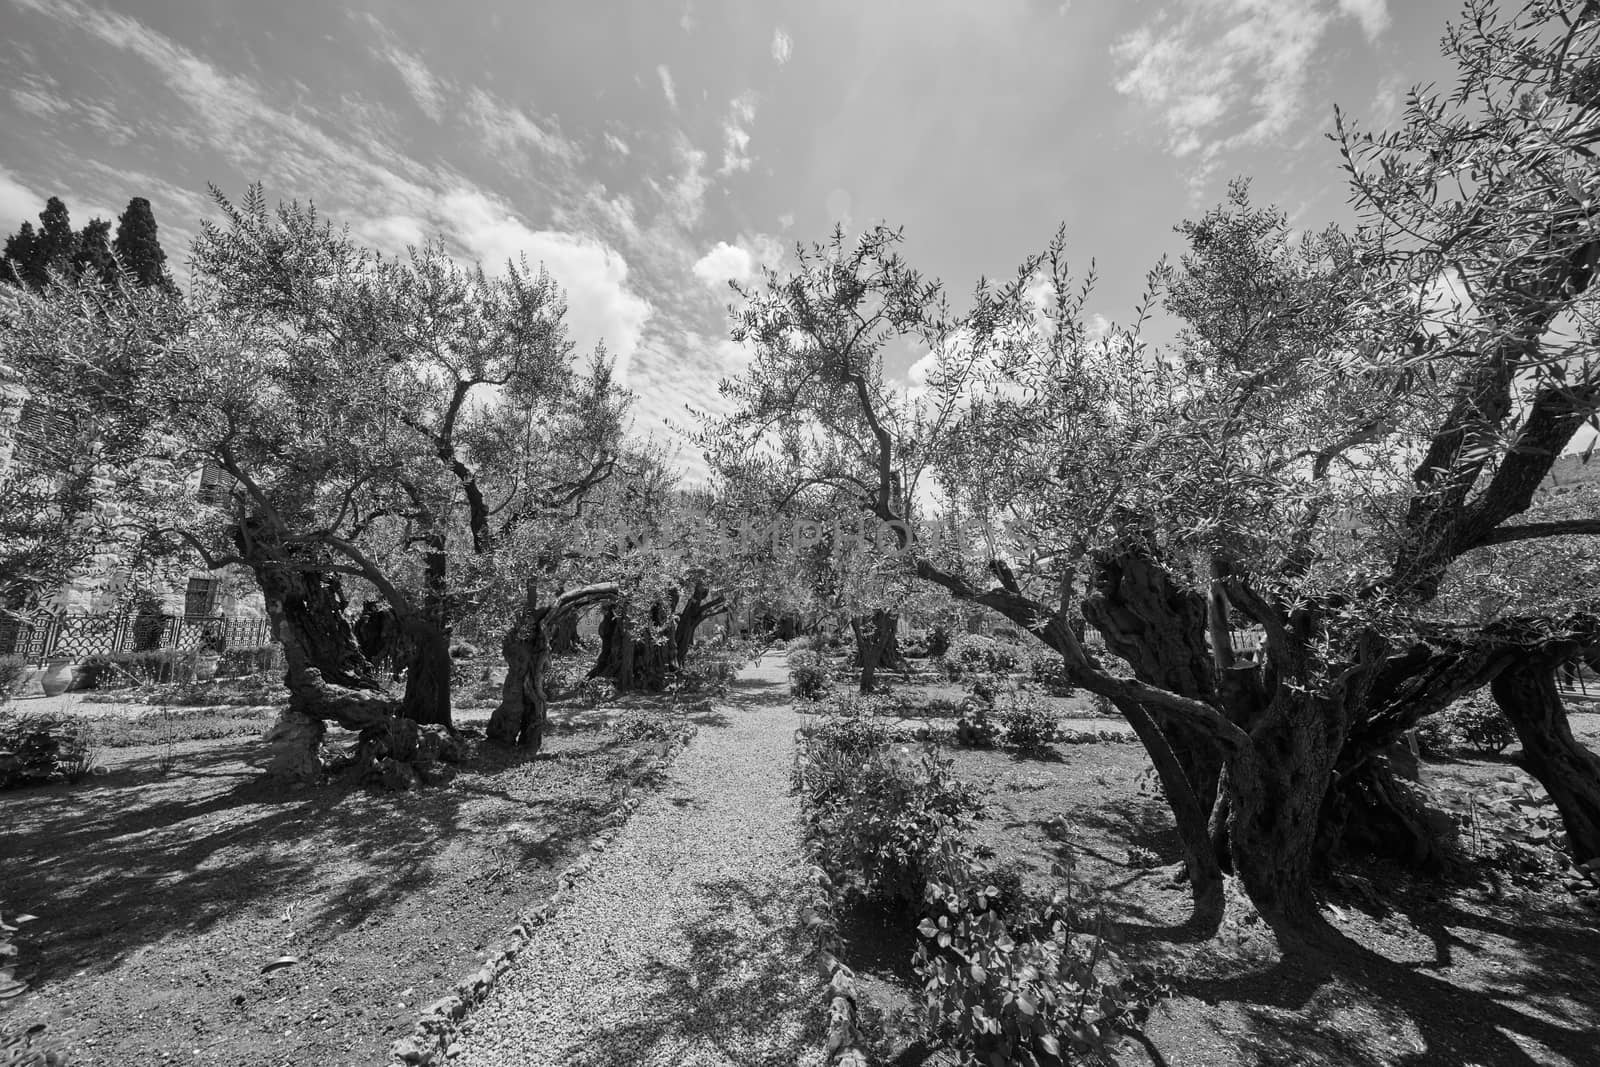 Gethsemane garden of olive trees at the olive mount, Jerusalem